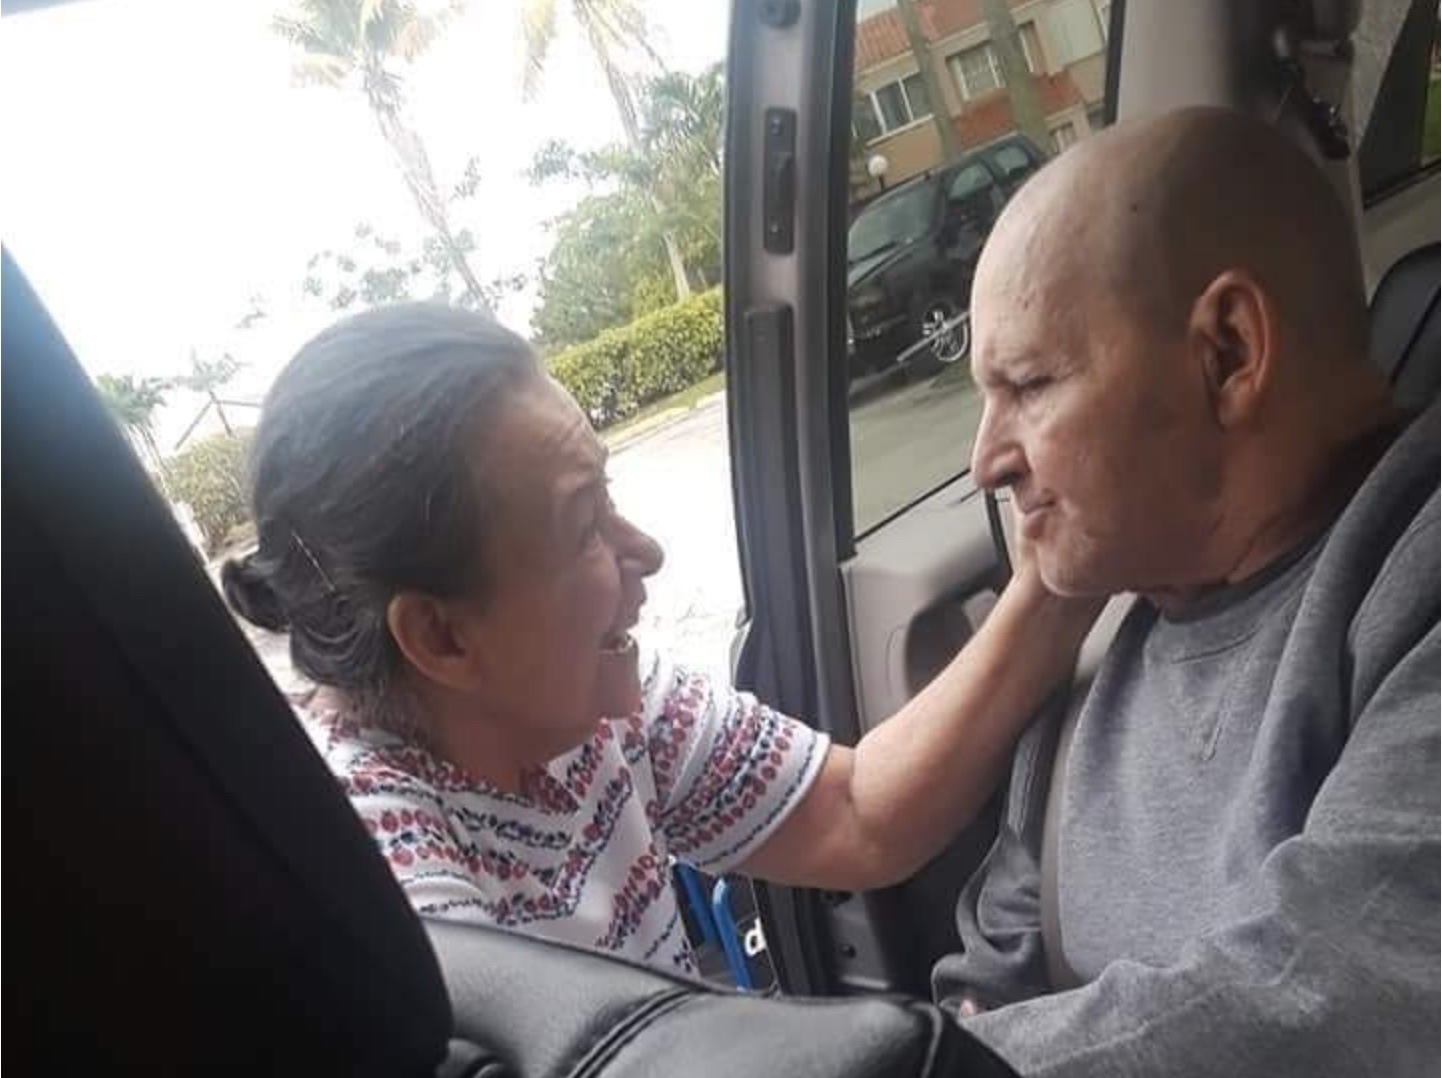 Luego de 39 años tras las rejas, Eduardo Arocena es liberado